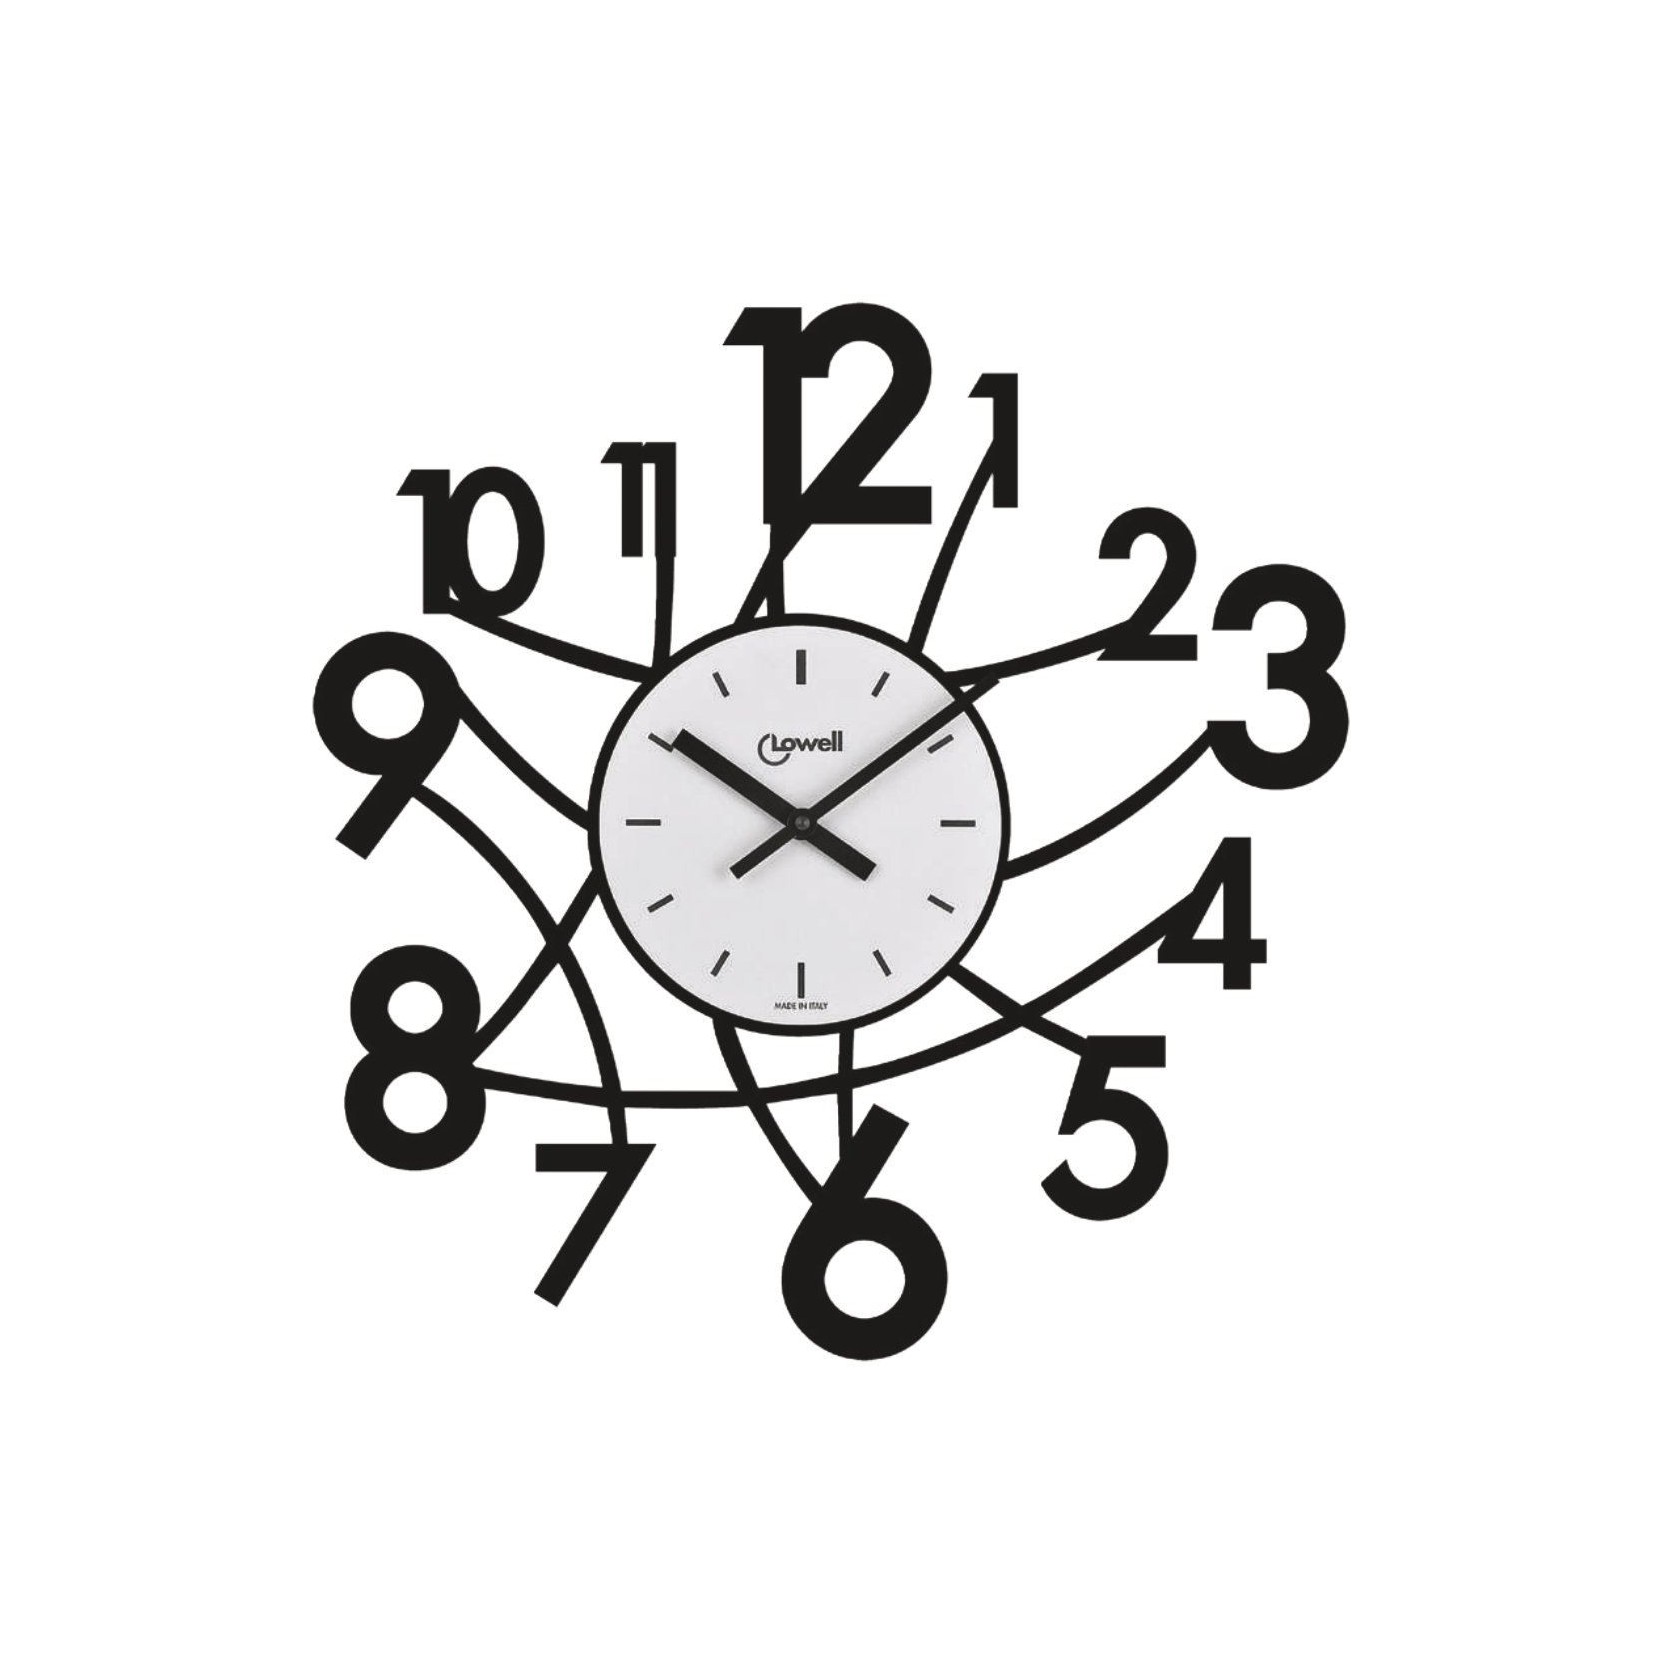 Циферблаты часов прямоугольные. Часы без циферблата настенные. Циферблат для настенных часов. Оригинальные настенные часы. Циферблат часов прямоугольный.